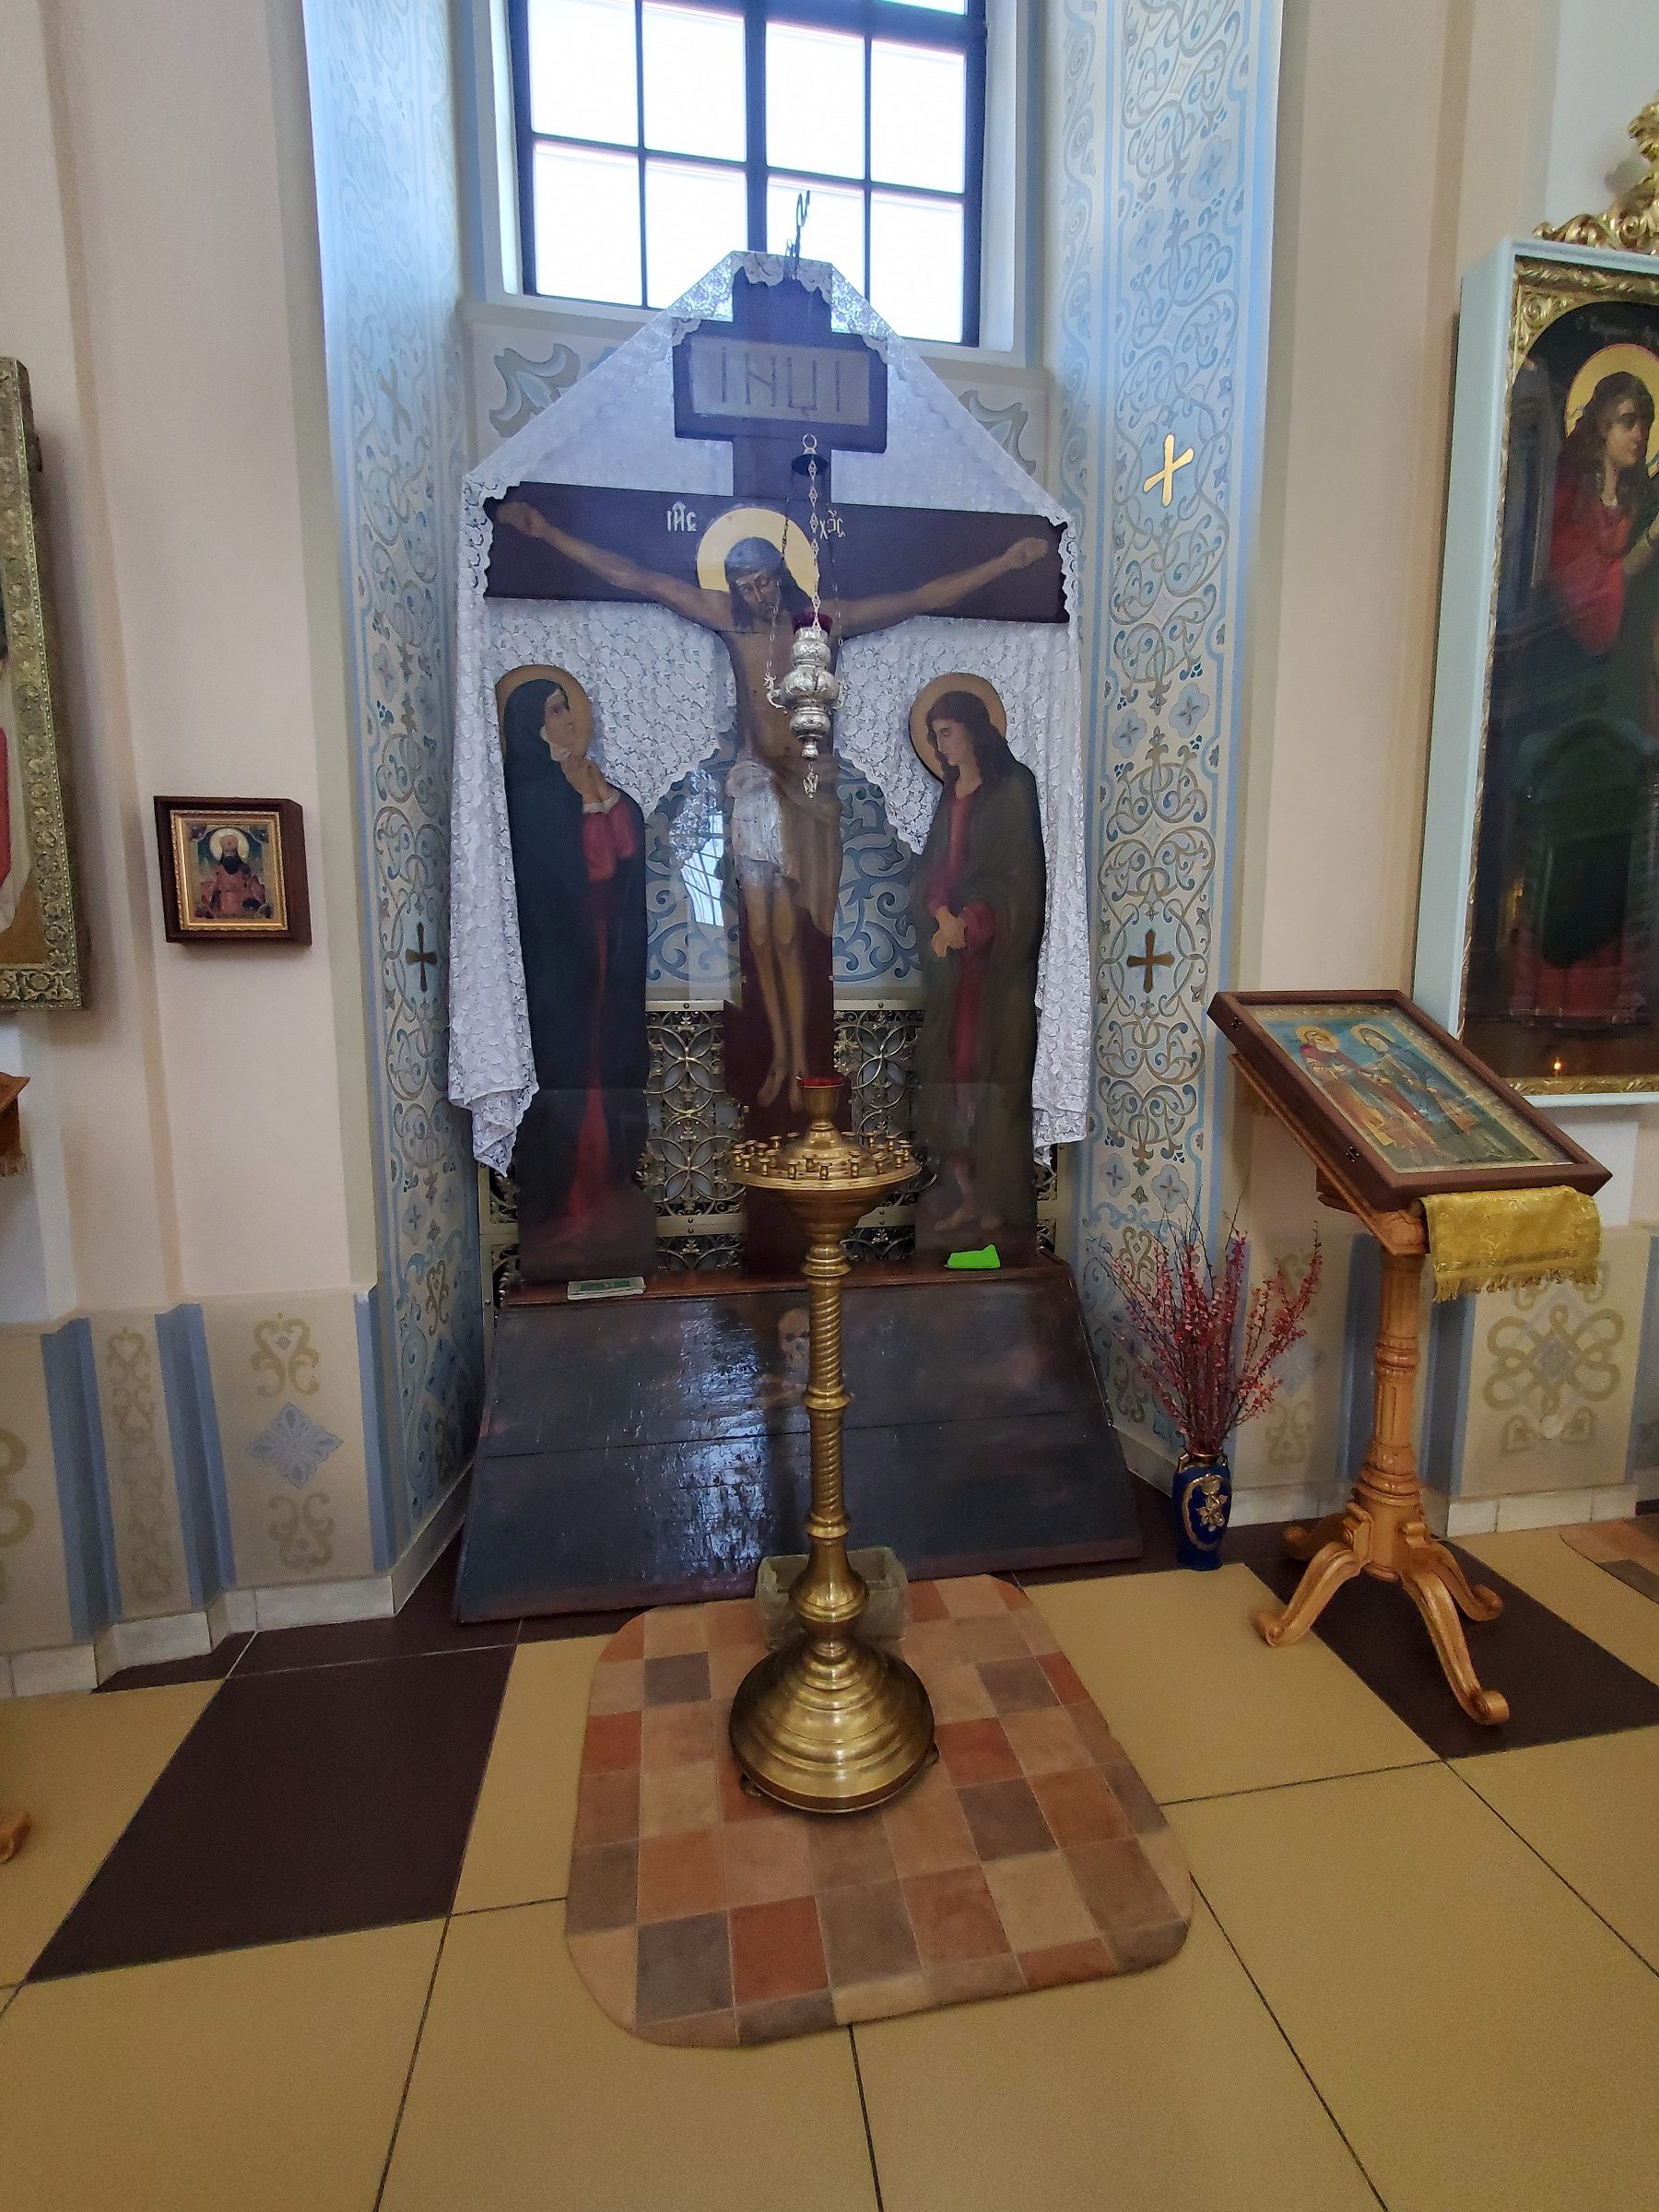 20211030 140008 rotated - Свято-Покровский монастырь в Толочине